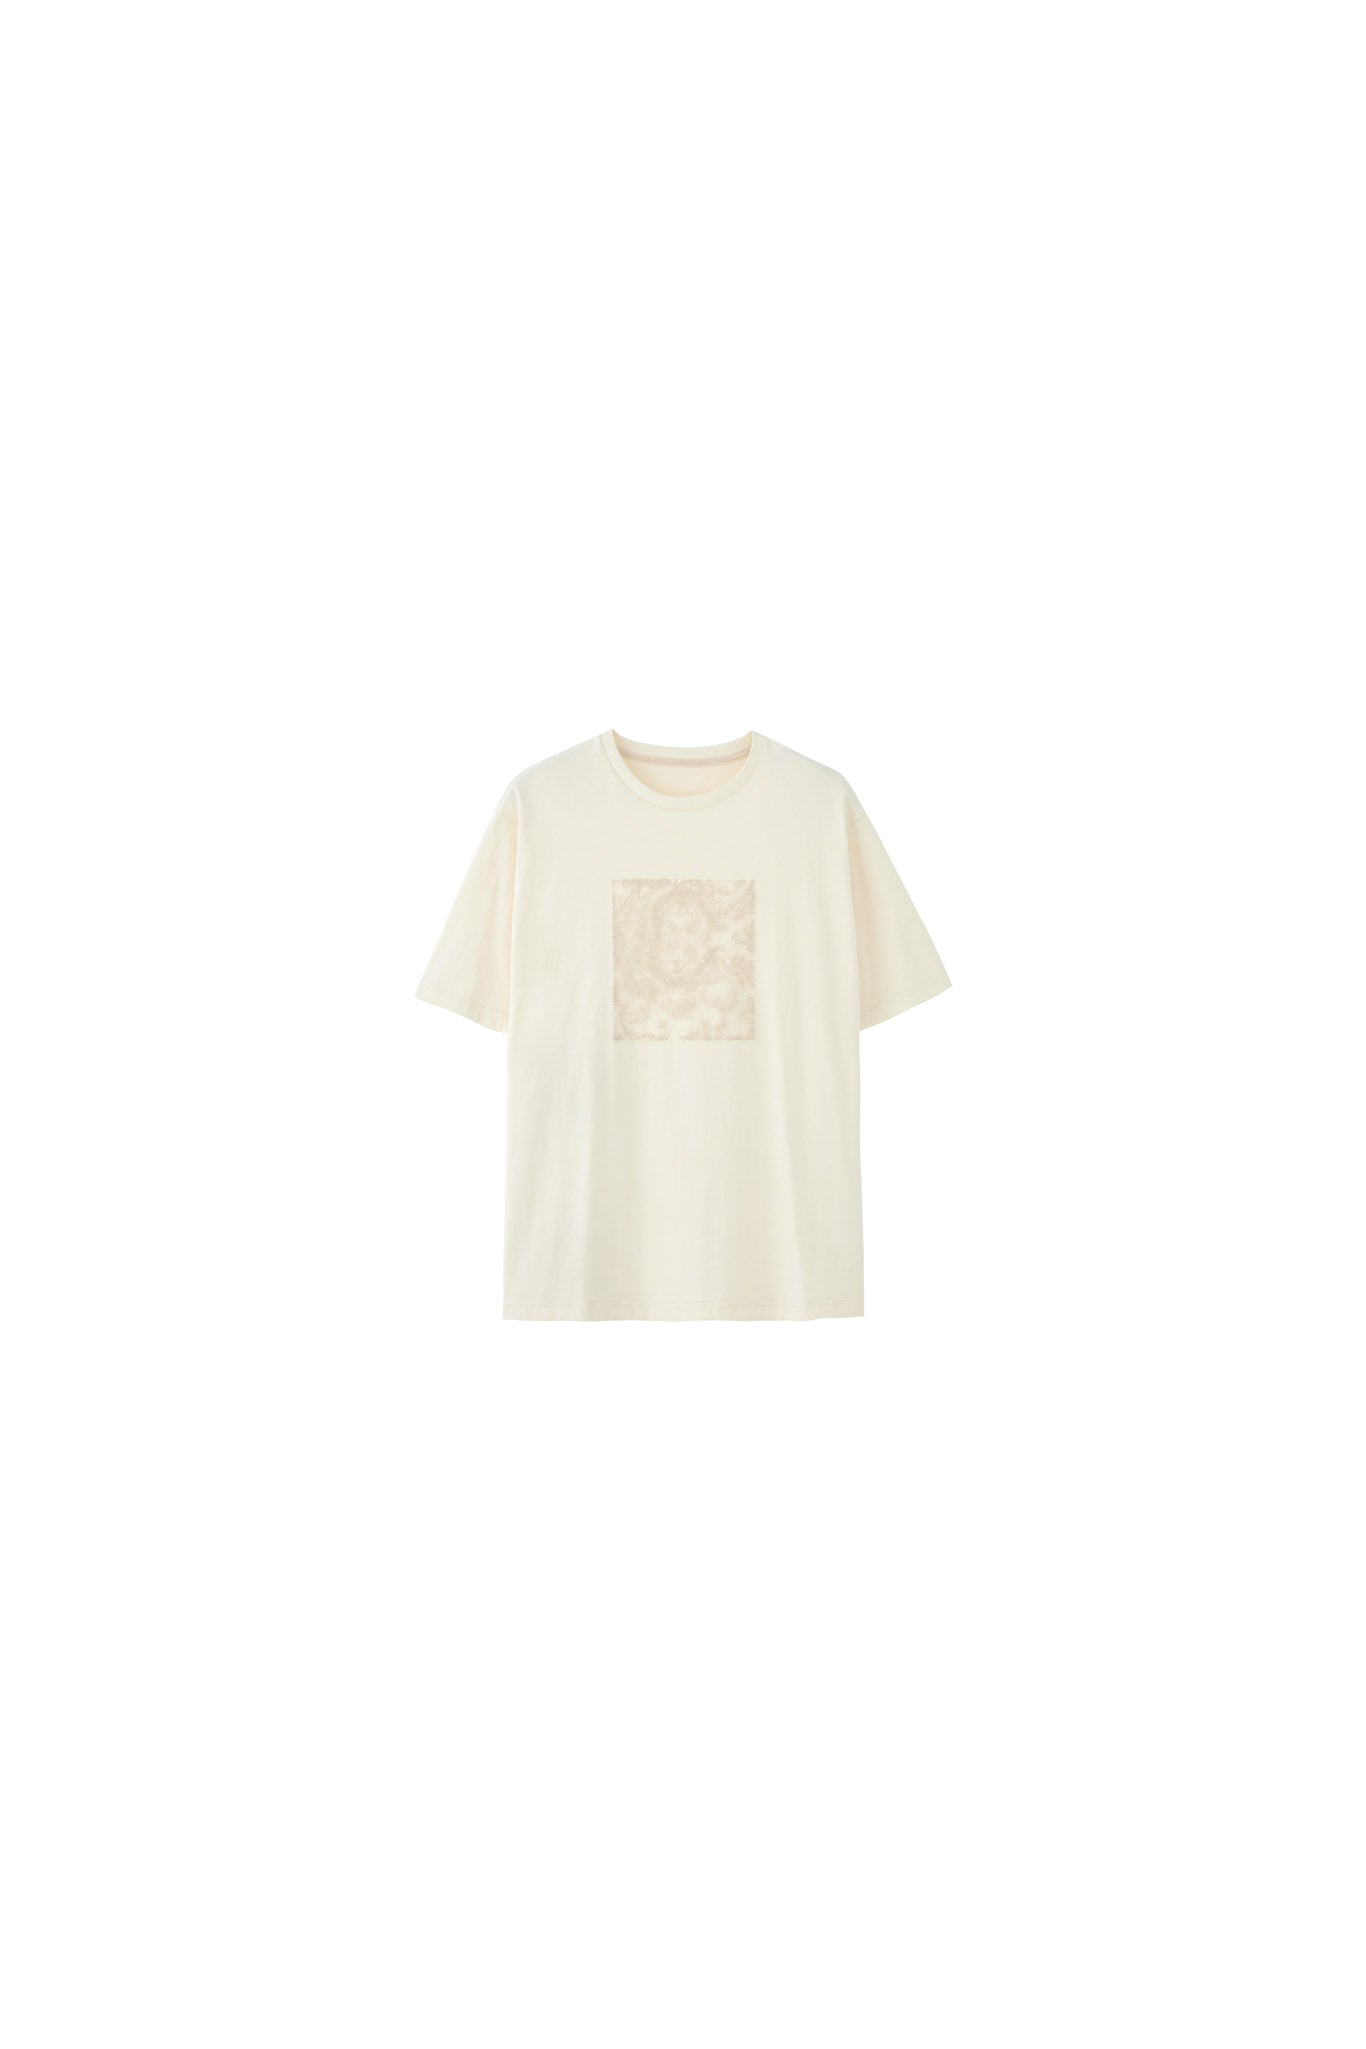 【tageechita】スパンコールレースパッチTシャツ